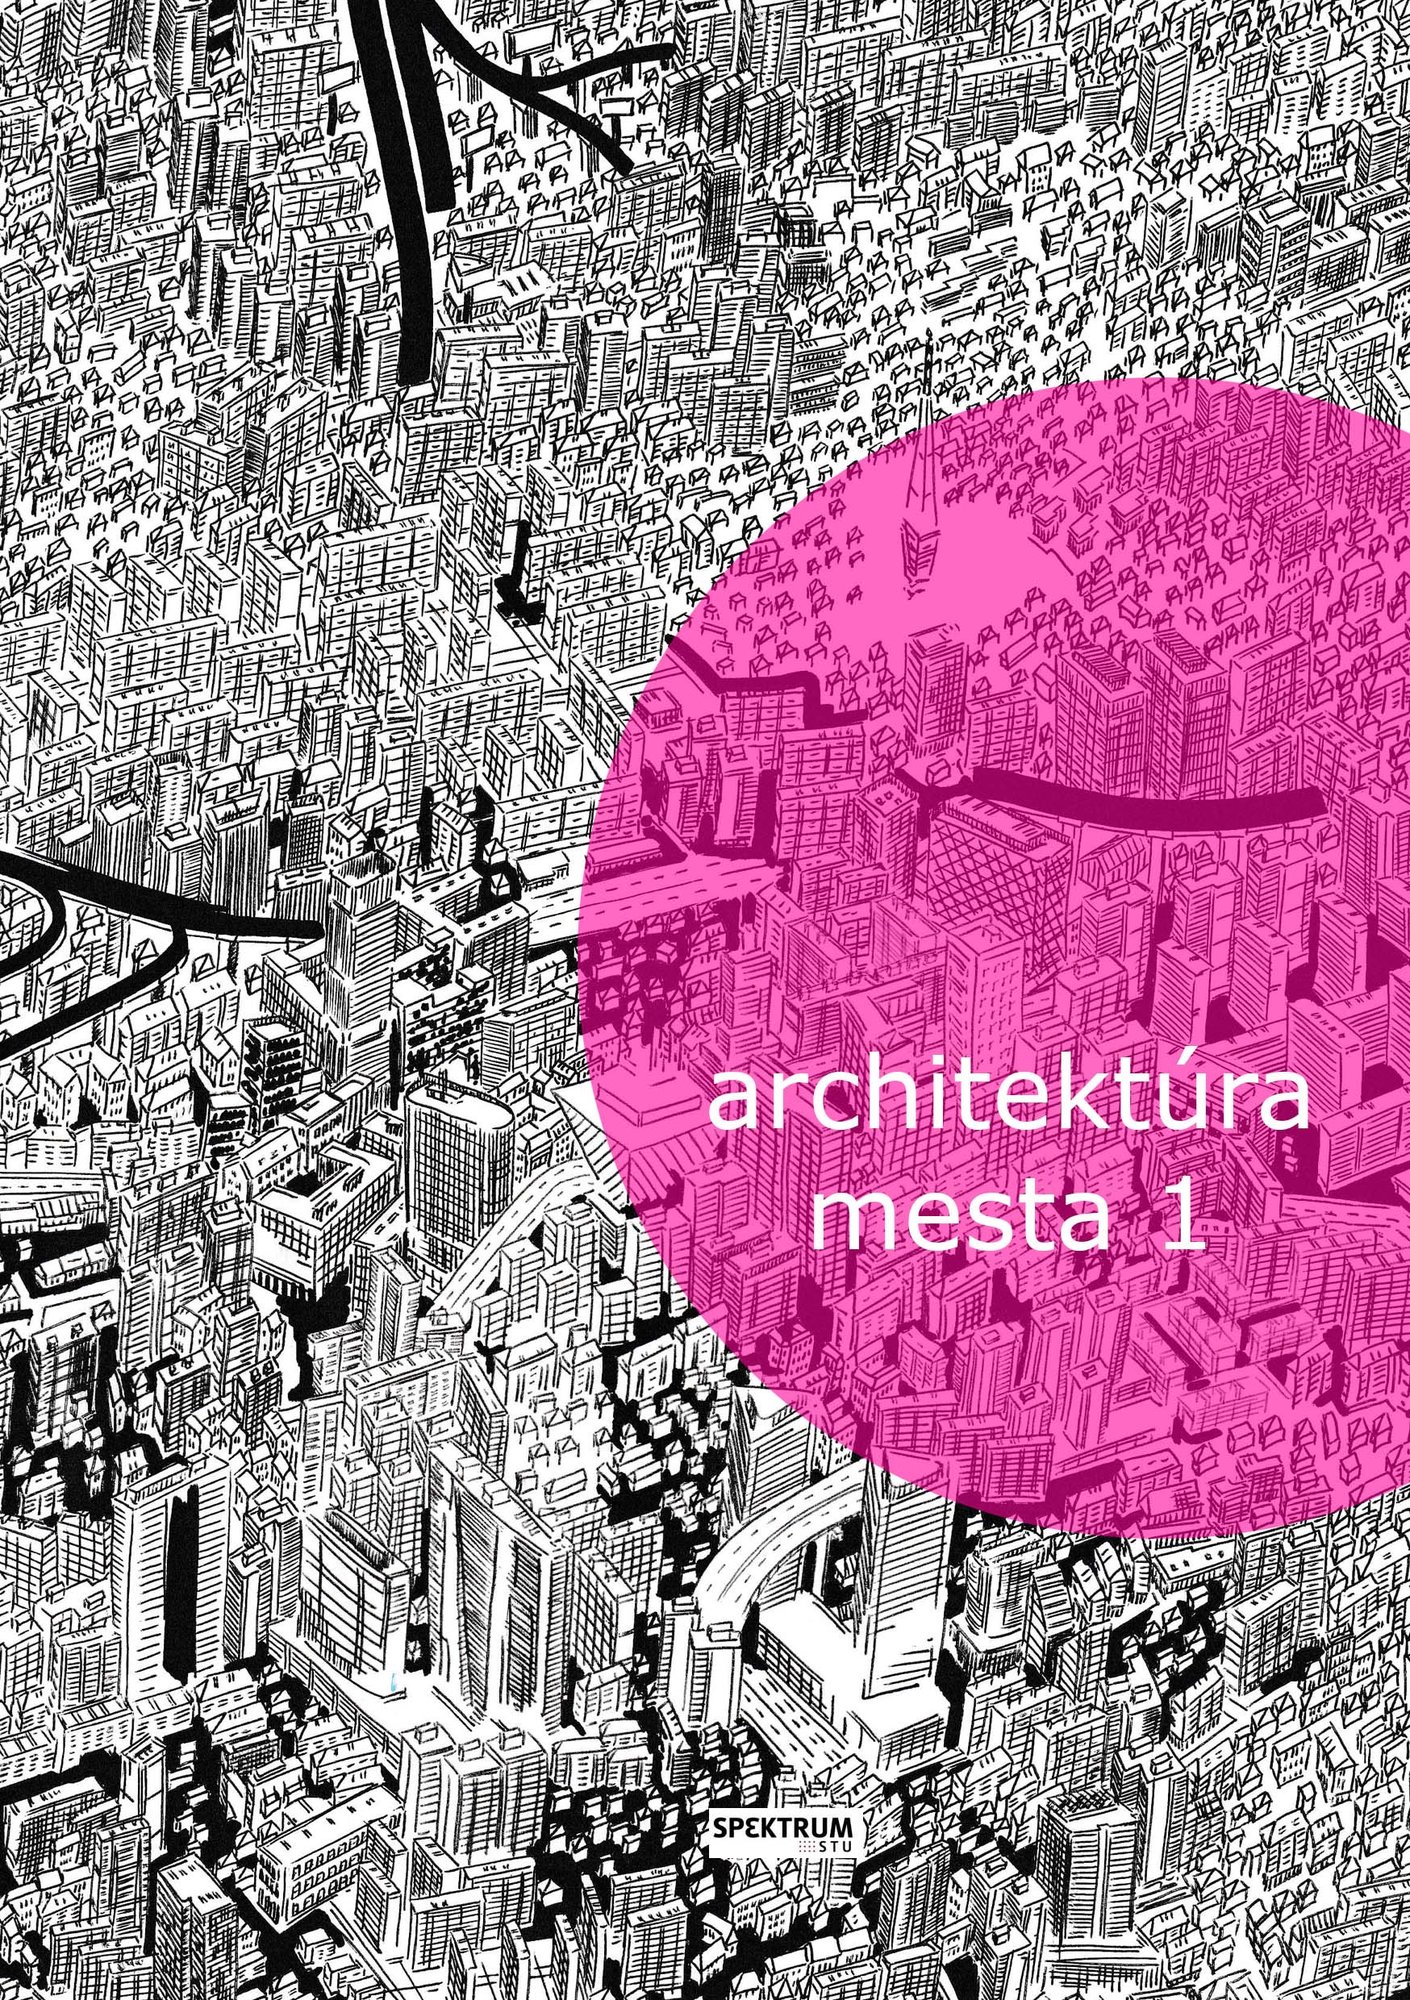 ARCHITEKTURA_MESTA_1